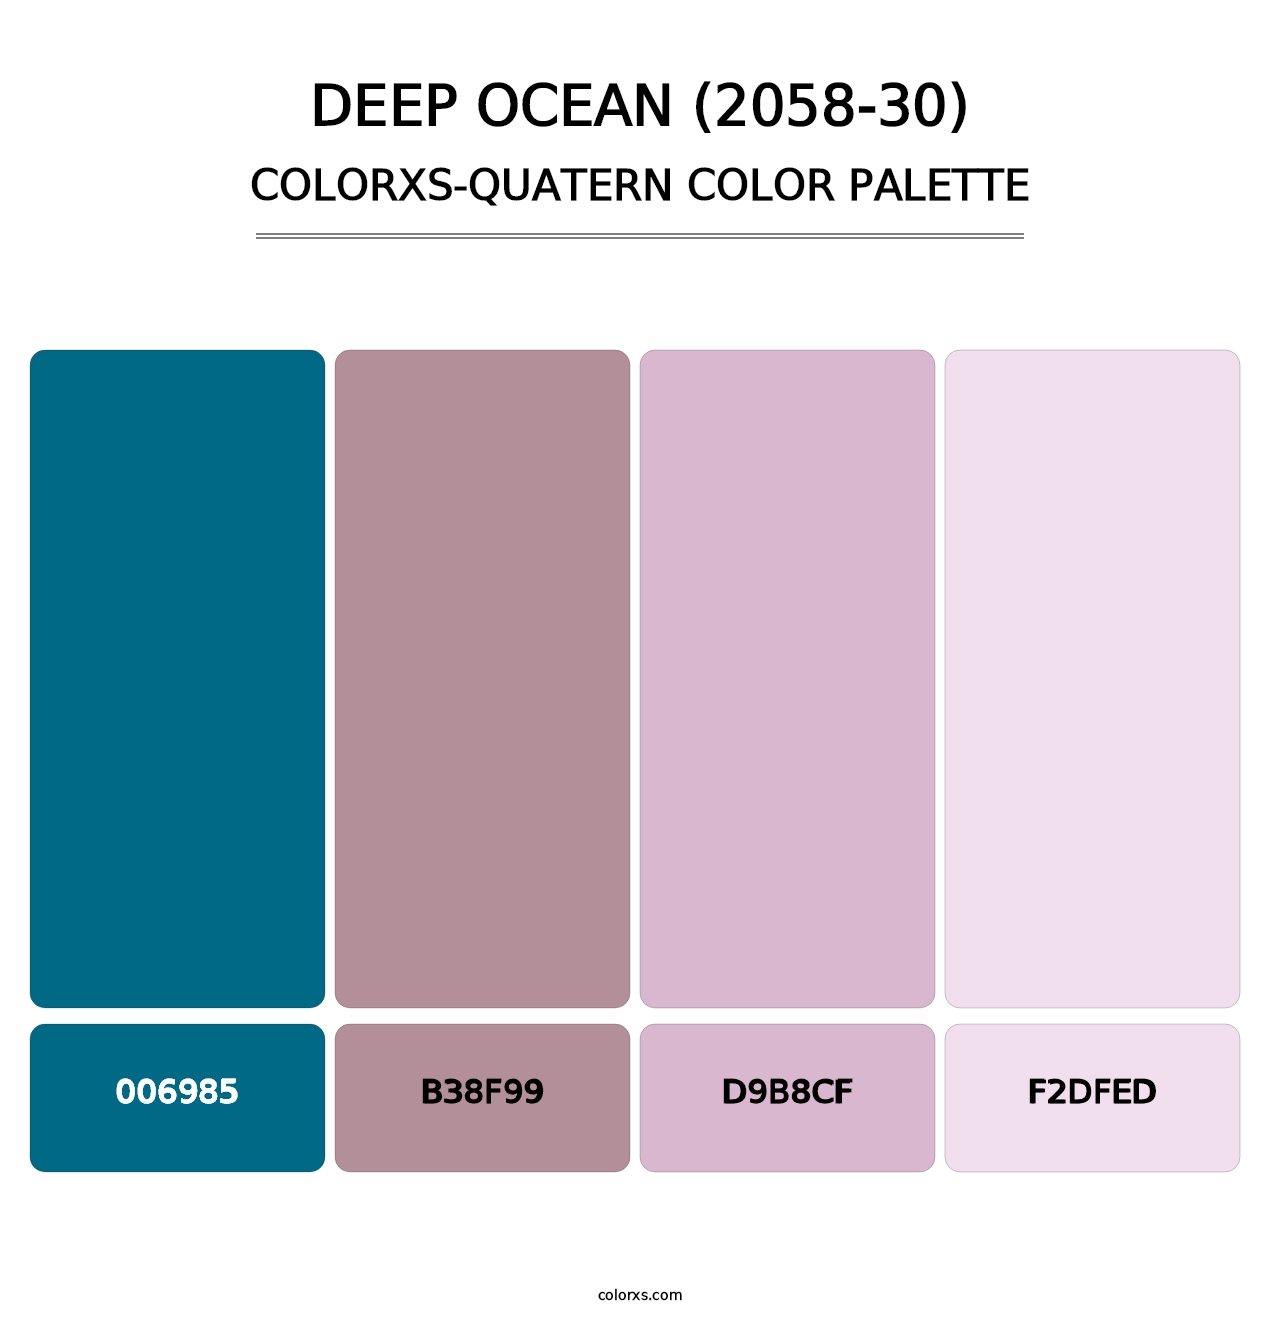 Deep Ocean (2058-30) - Colorxs Quatern Palette